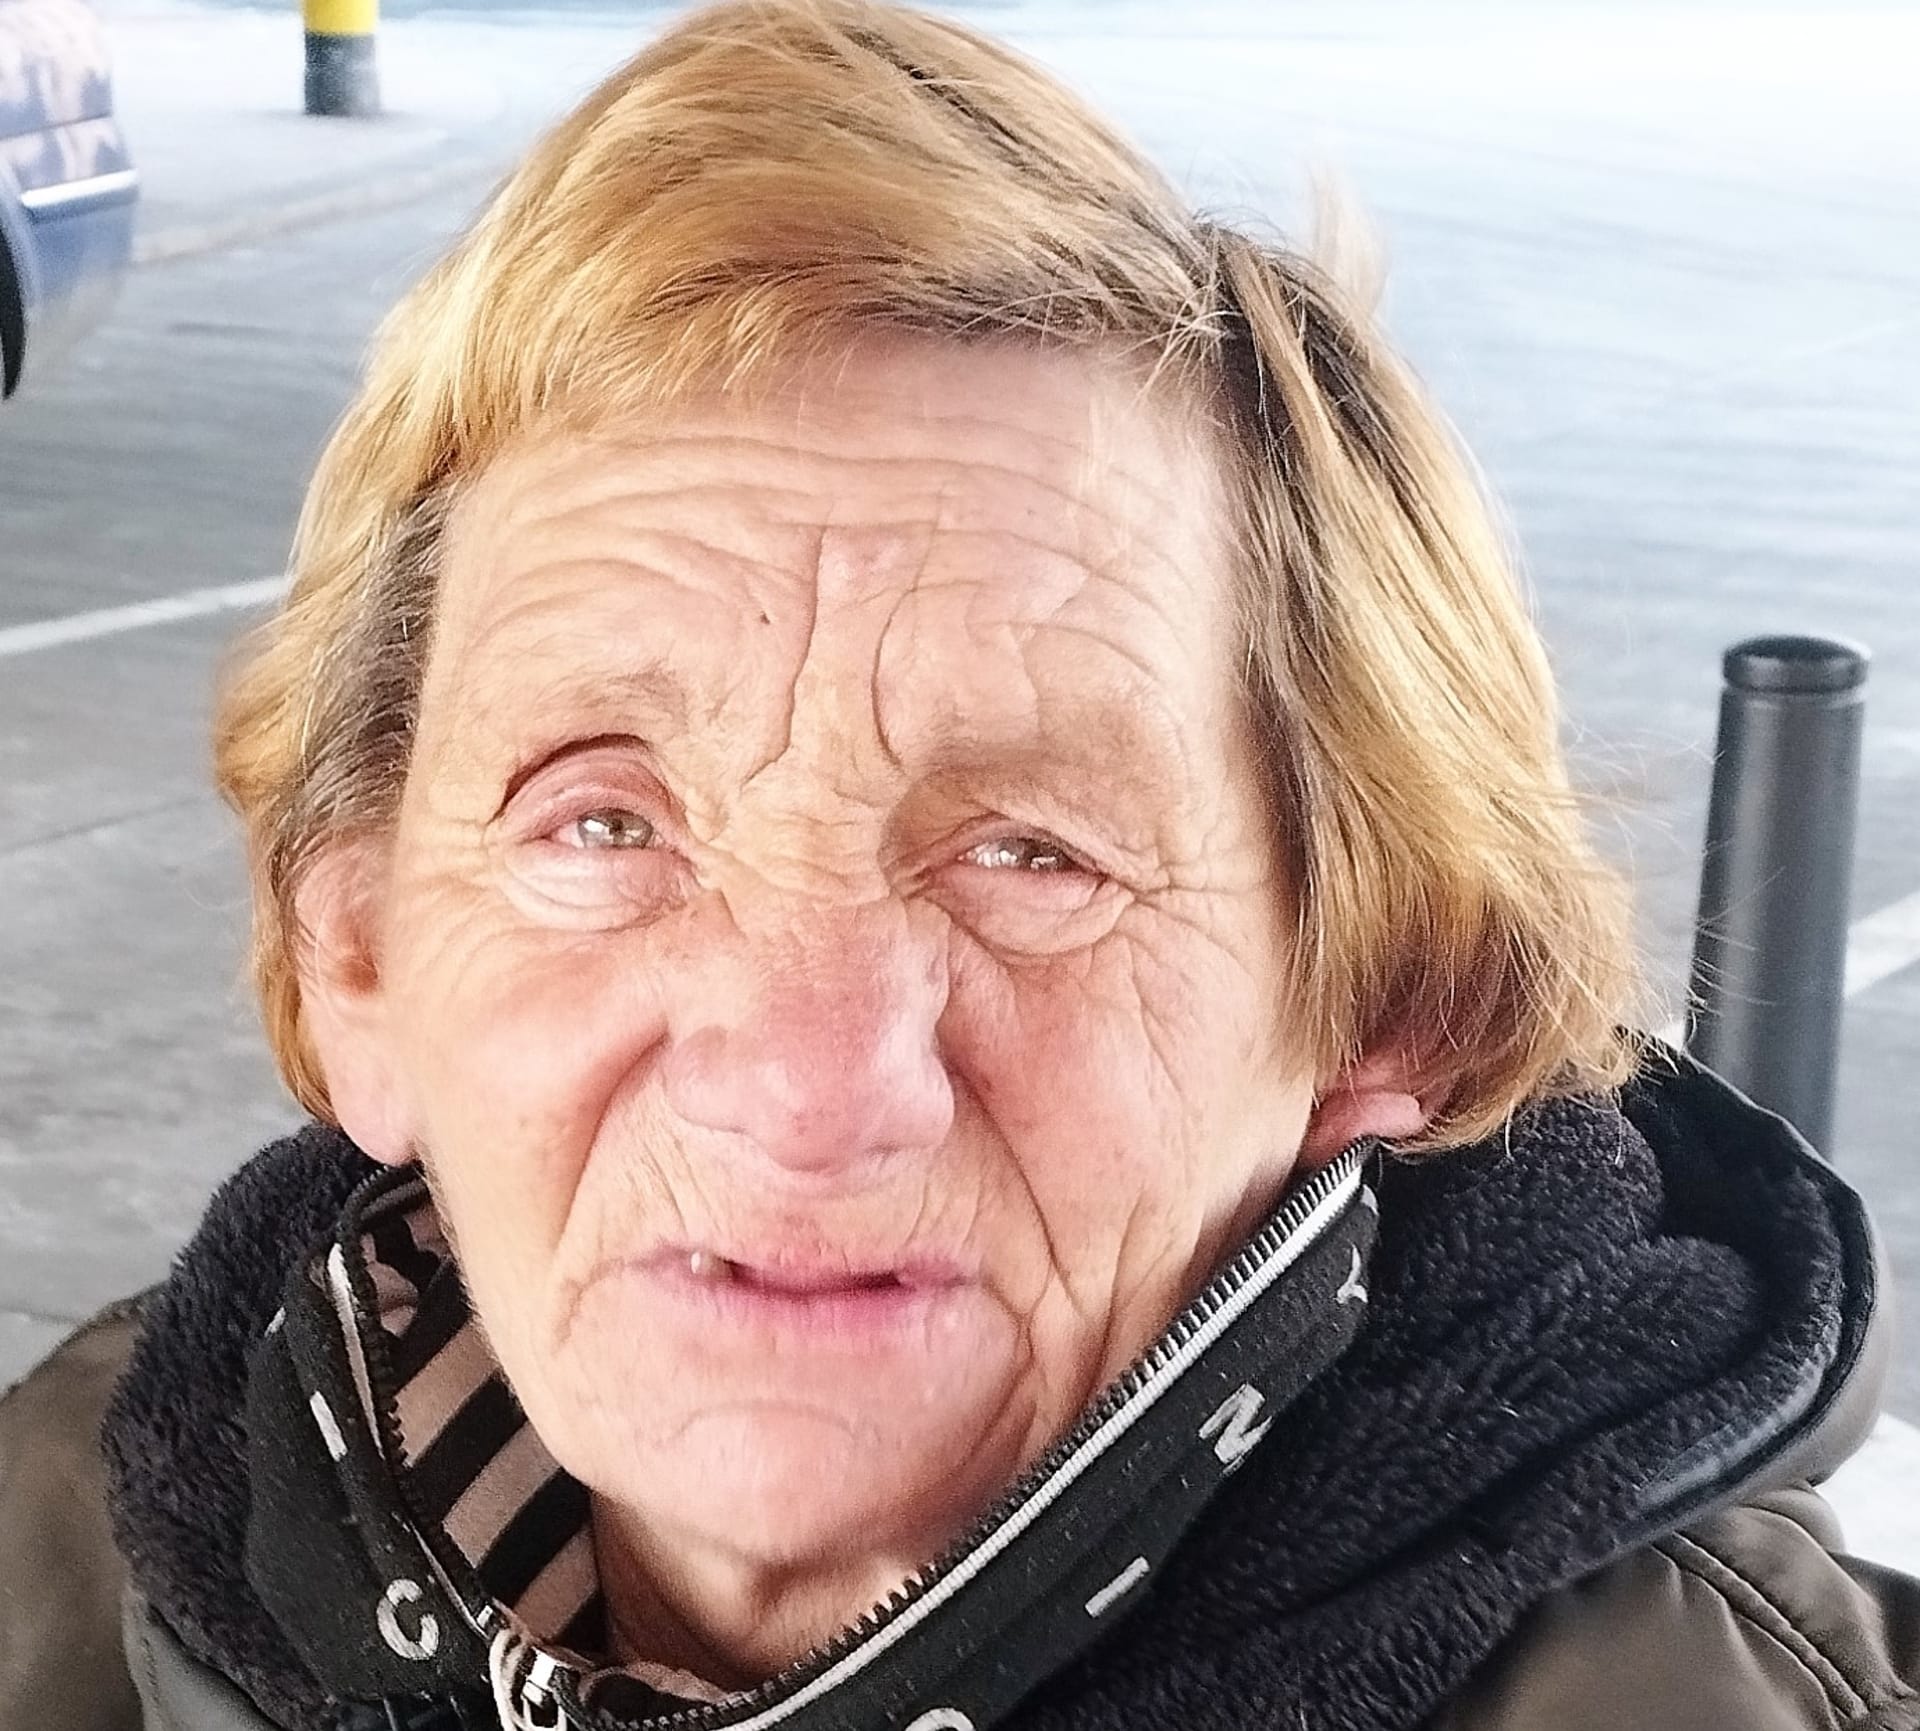 Amputovali jí obě nohy, přesto nemá invalidní důchod a na nádraží ji nepustí ani na WC pro invalidy. 64letá Kristýna Kerestešová z Ostravy..